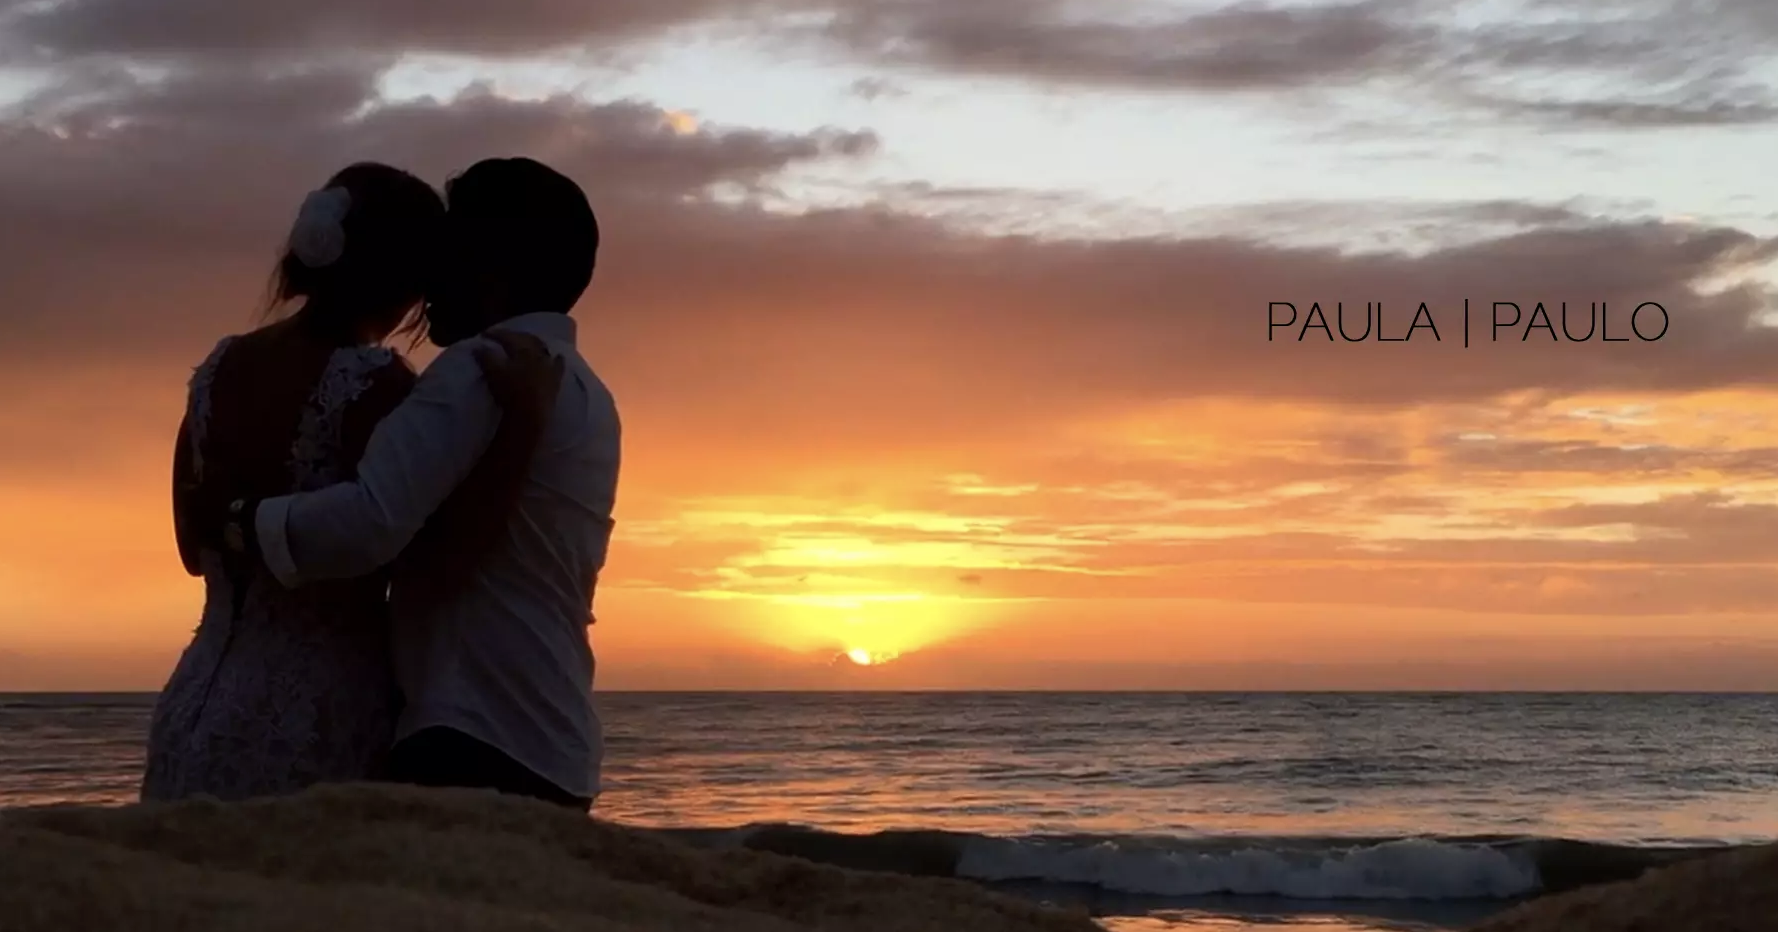 Paula e Paulo